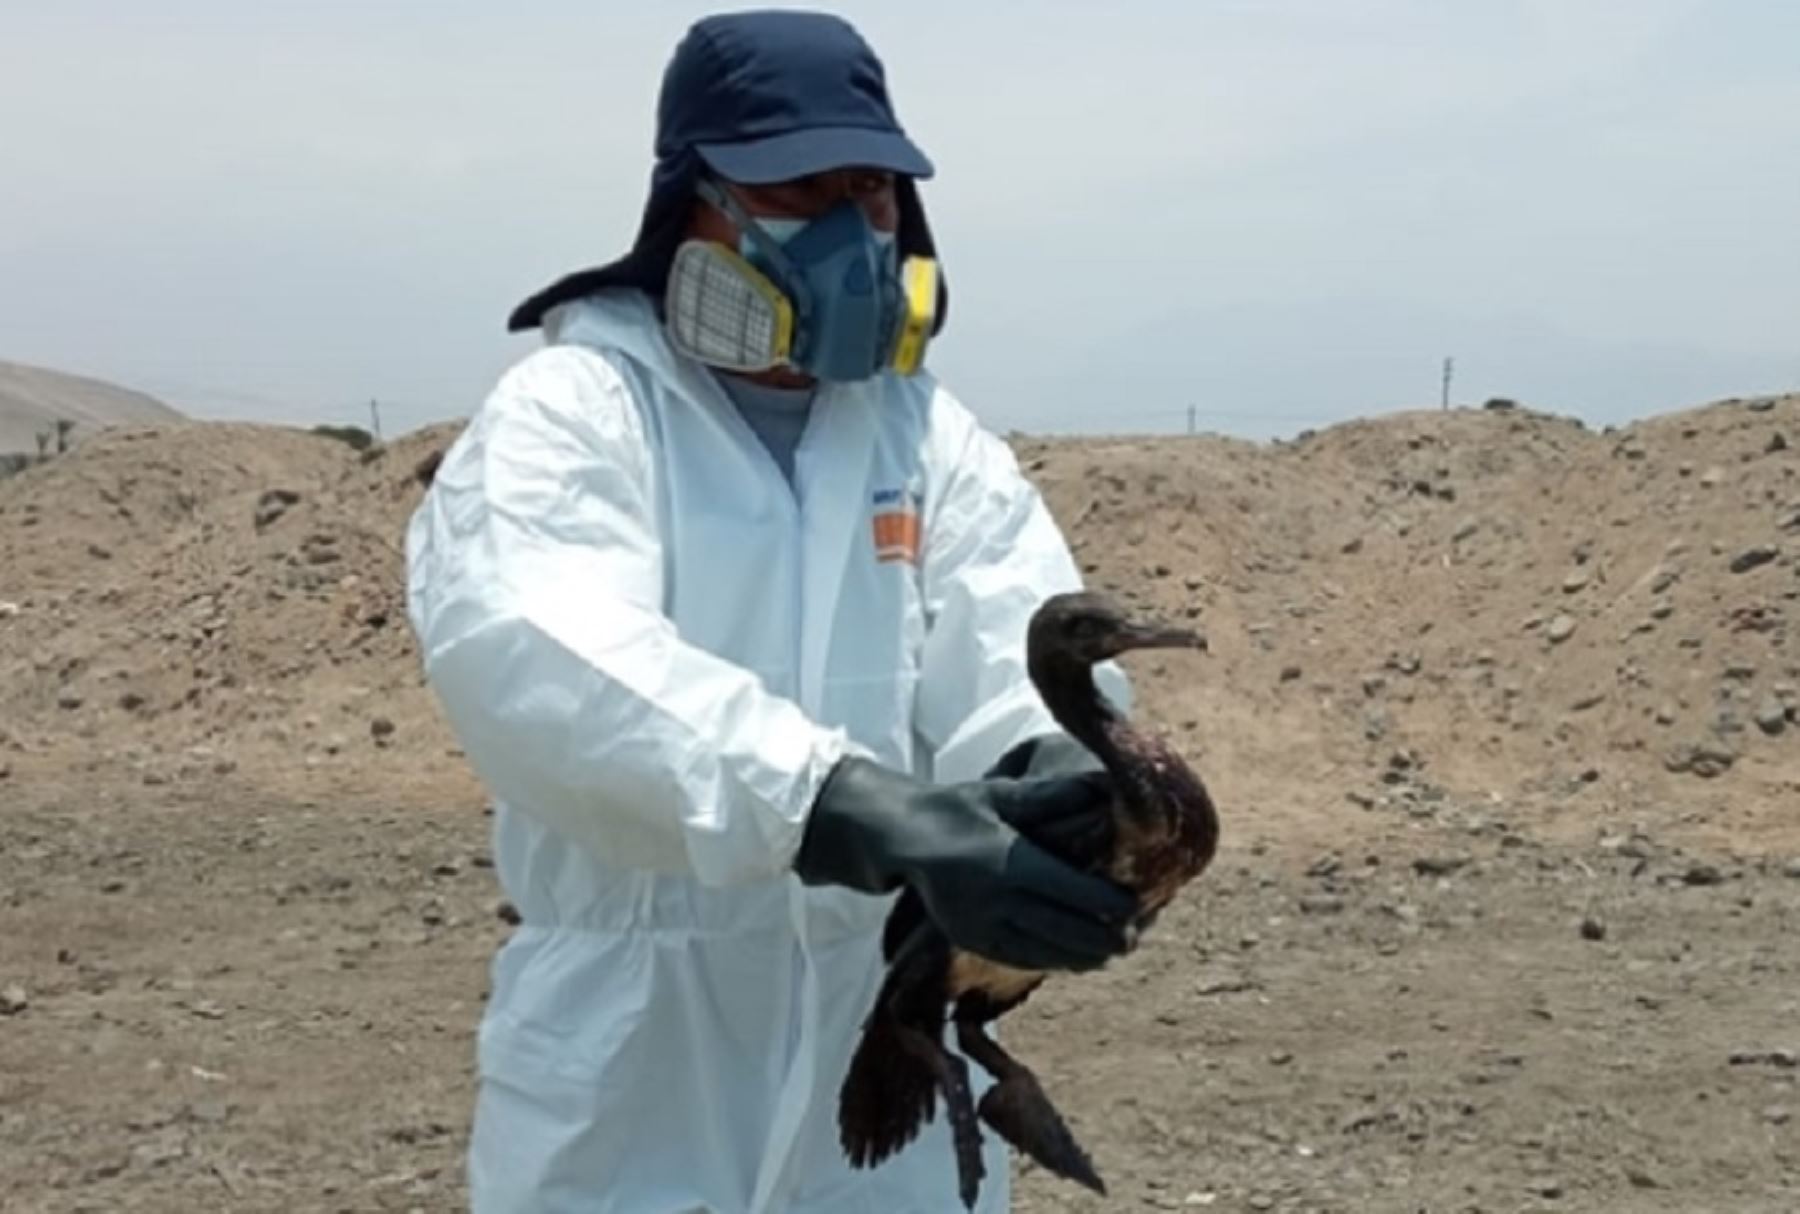 A la fecha,  953 aves cubiertas de petróleo fueron registradas en las áreas naturales protegidas afectadas tras la emergencia ambiental ocurrida el 15 de enero en el litoral de Ventanilla, por parte del equipo especializado del Servicio Nacional de Áreas Naturales Protegidas por el Estado.